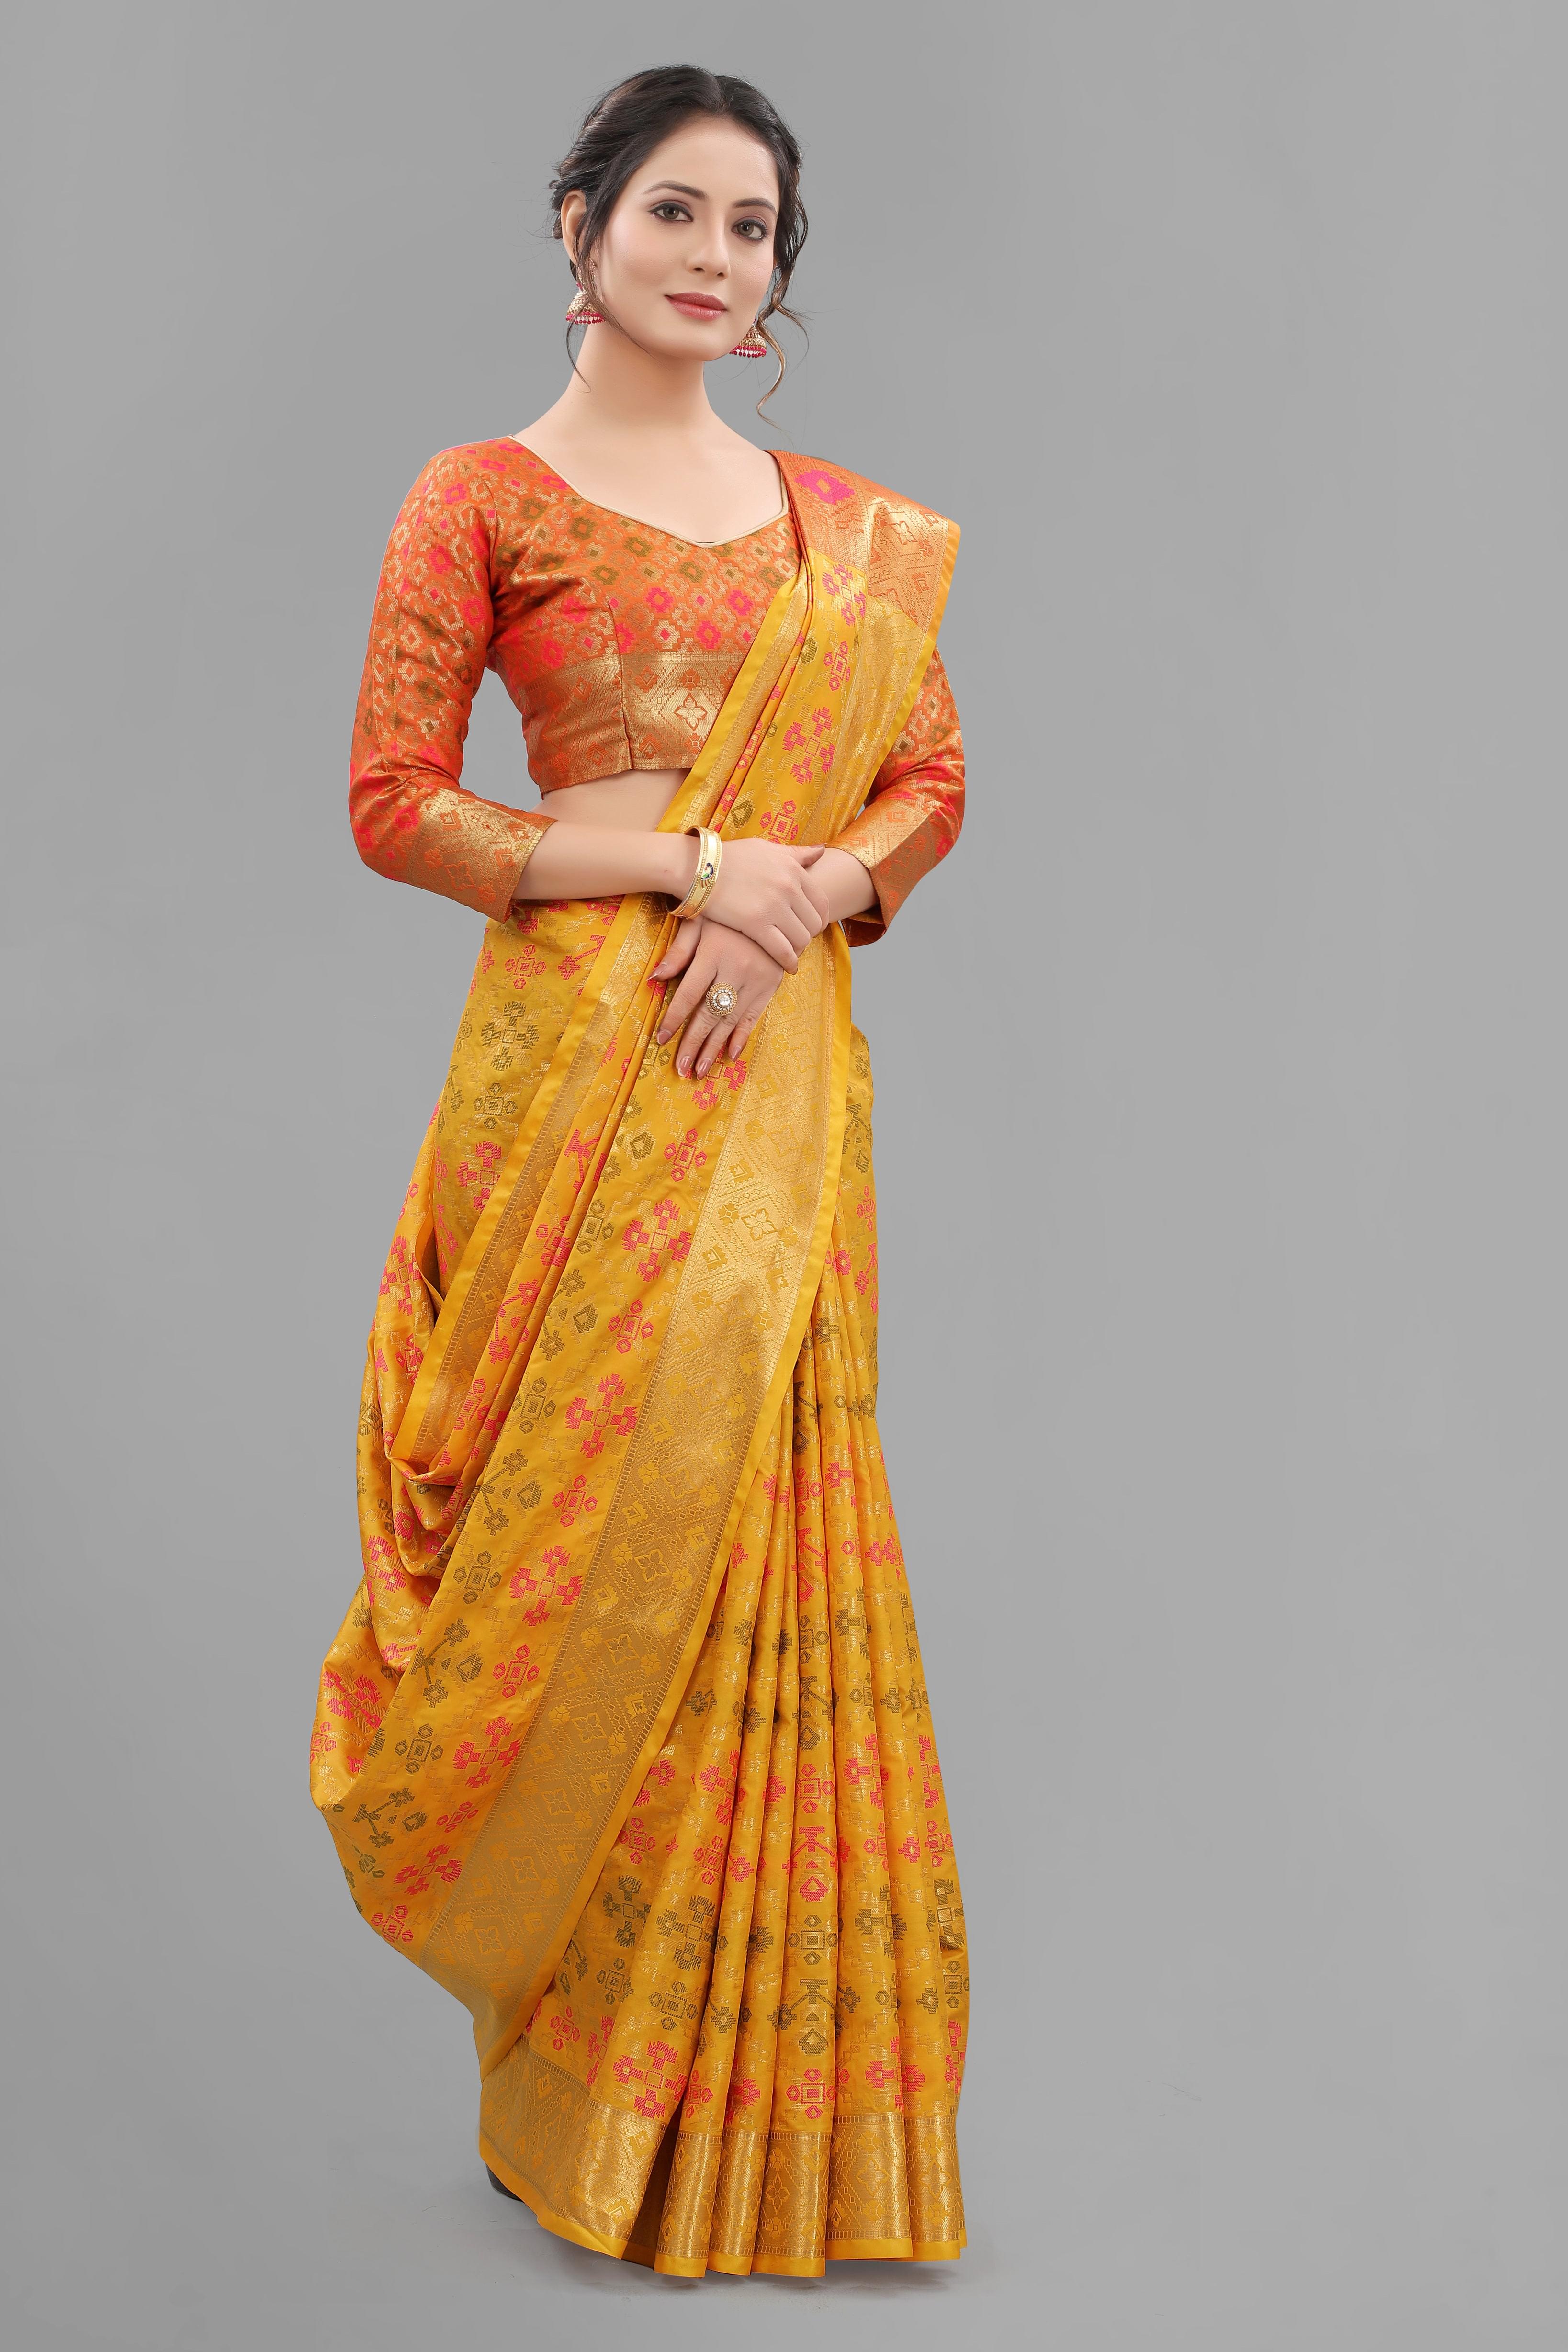 Hot Yellow Color Soft Lichi Silk Patolla Design Jacquard Saree